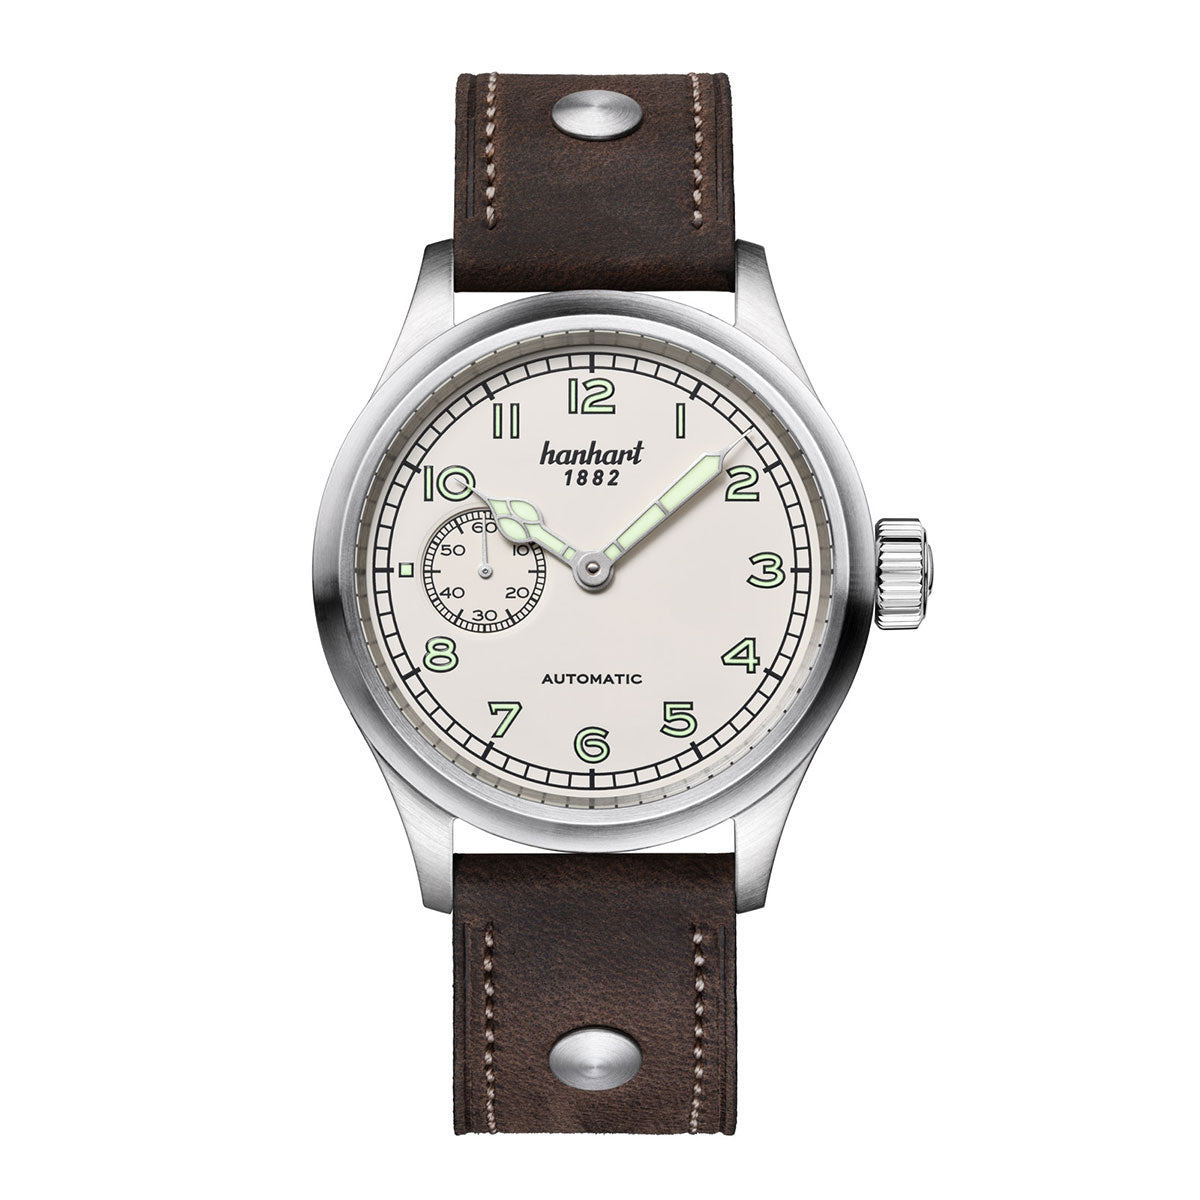 Hanhart 1882 watch - Pioneer Preventor9